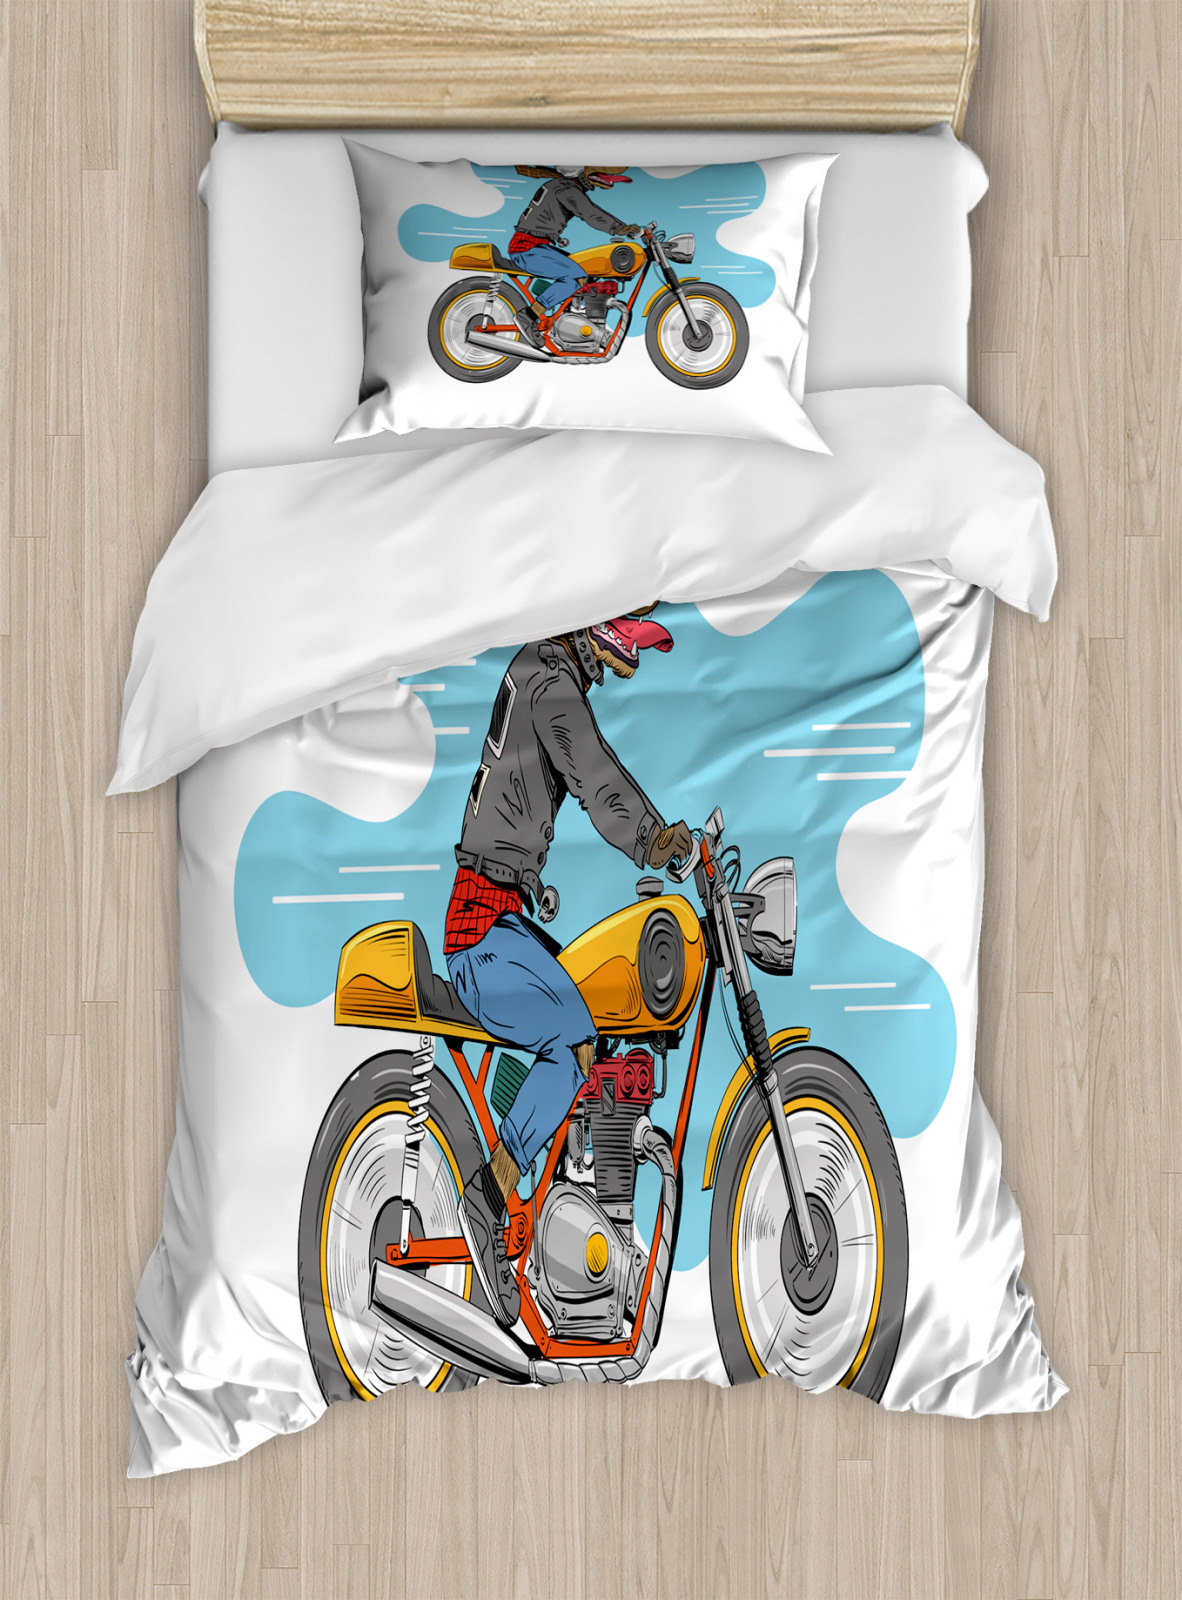 Motorrad Bettwäsche Set CartoonSpaßHund eBay